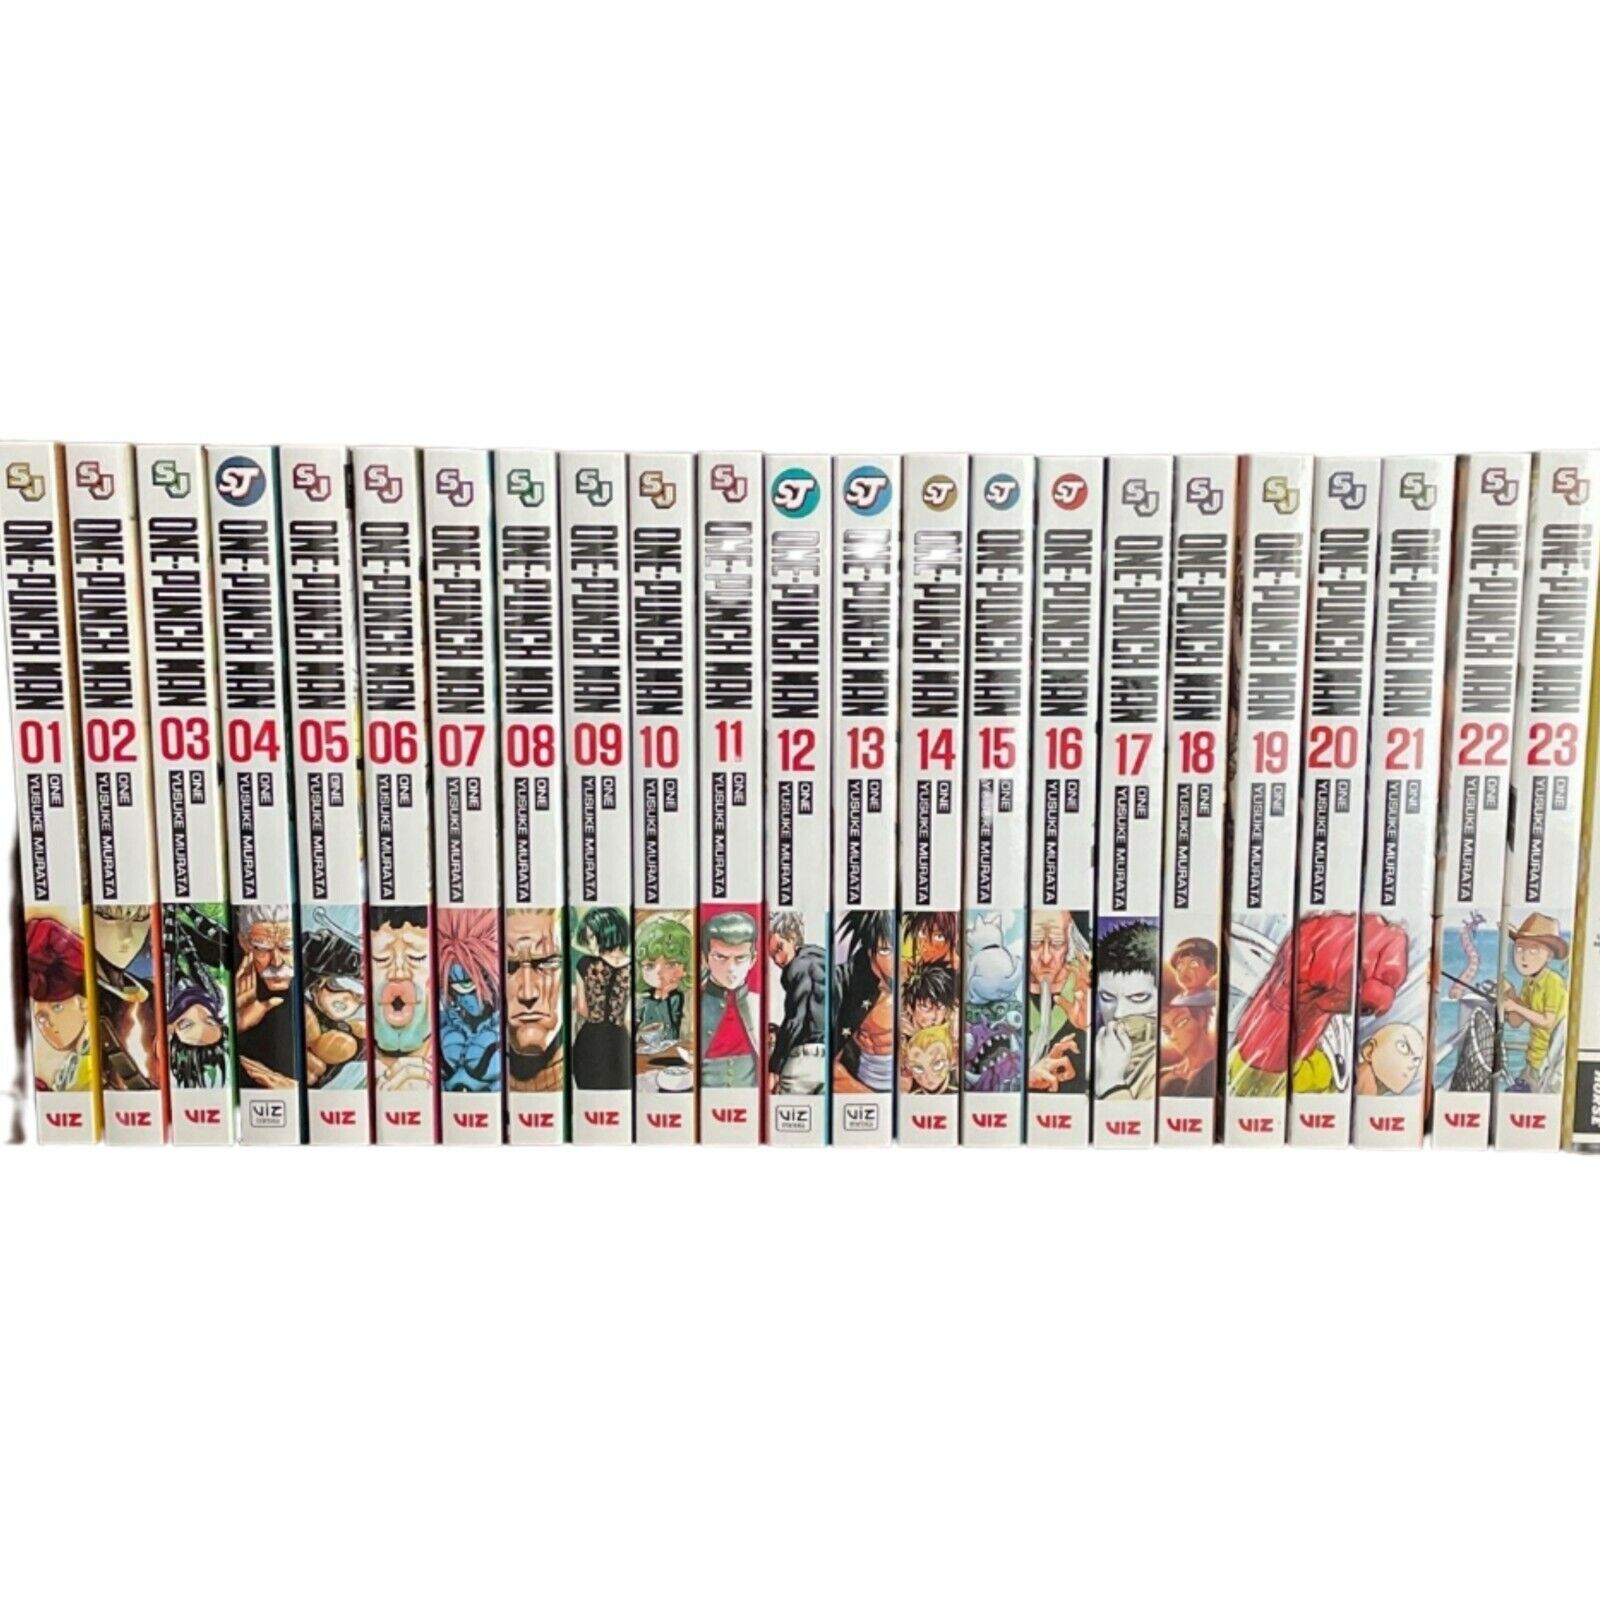 One Punch Man In English 1 Vol. of One Punch Man Manga English (Vol. 1-24) NEW - Viz Media | eBay